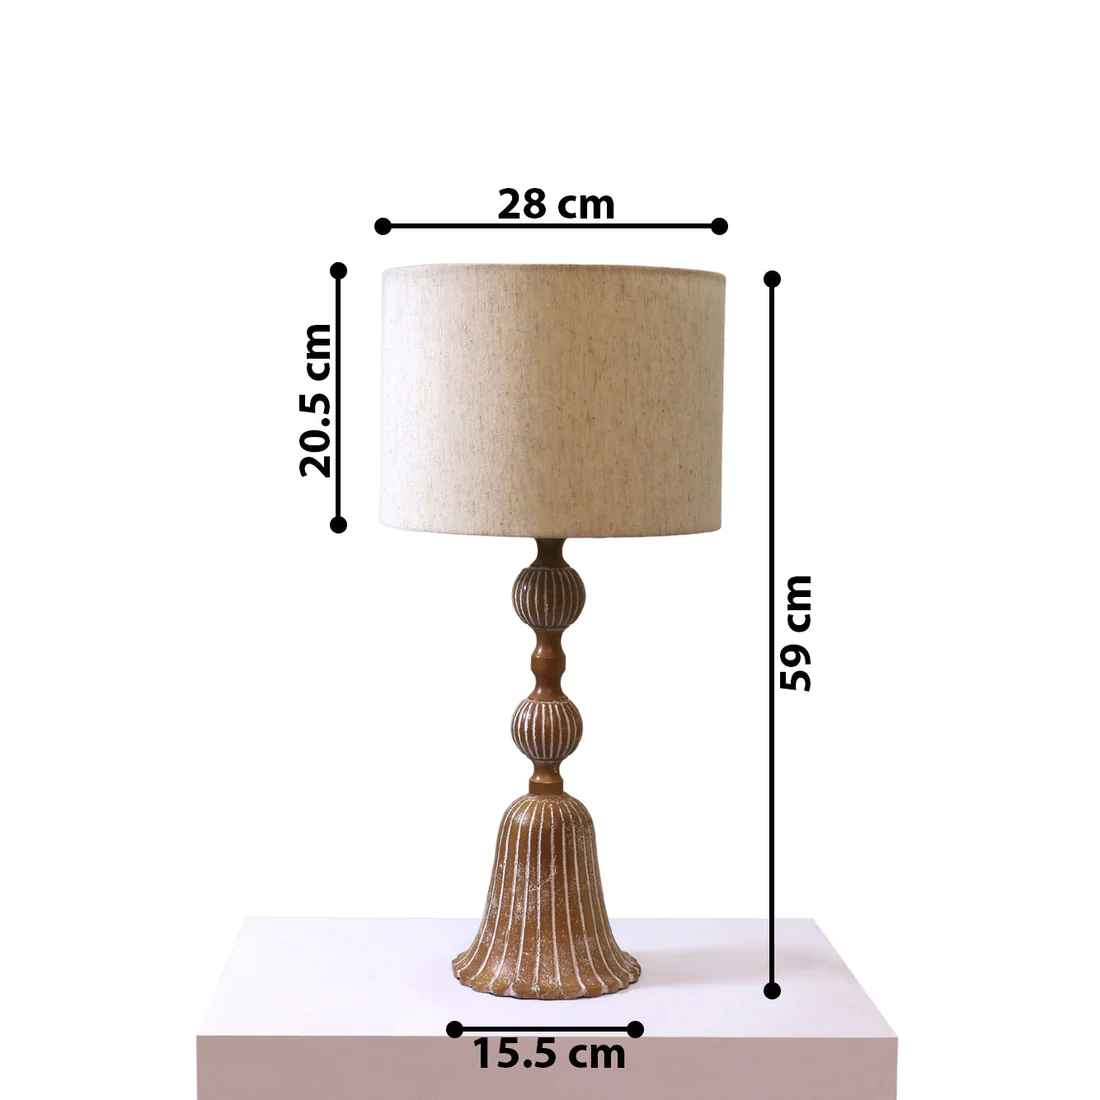 Lars' Table Lamp